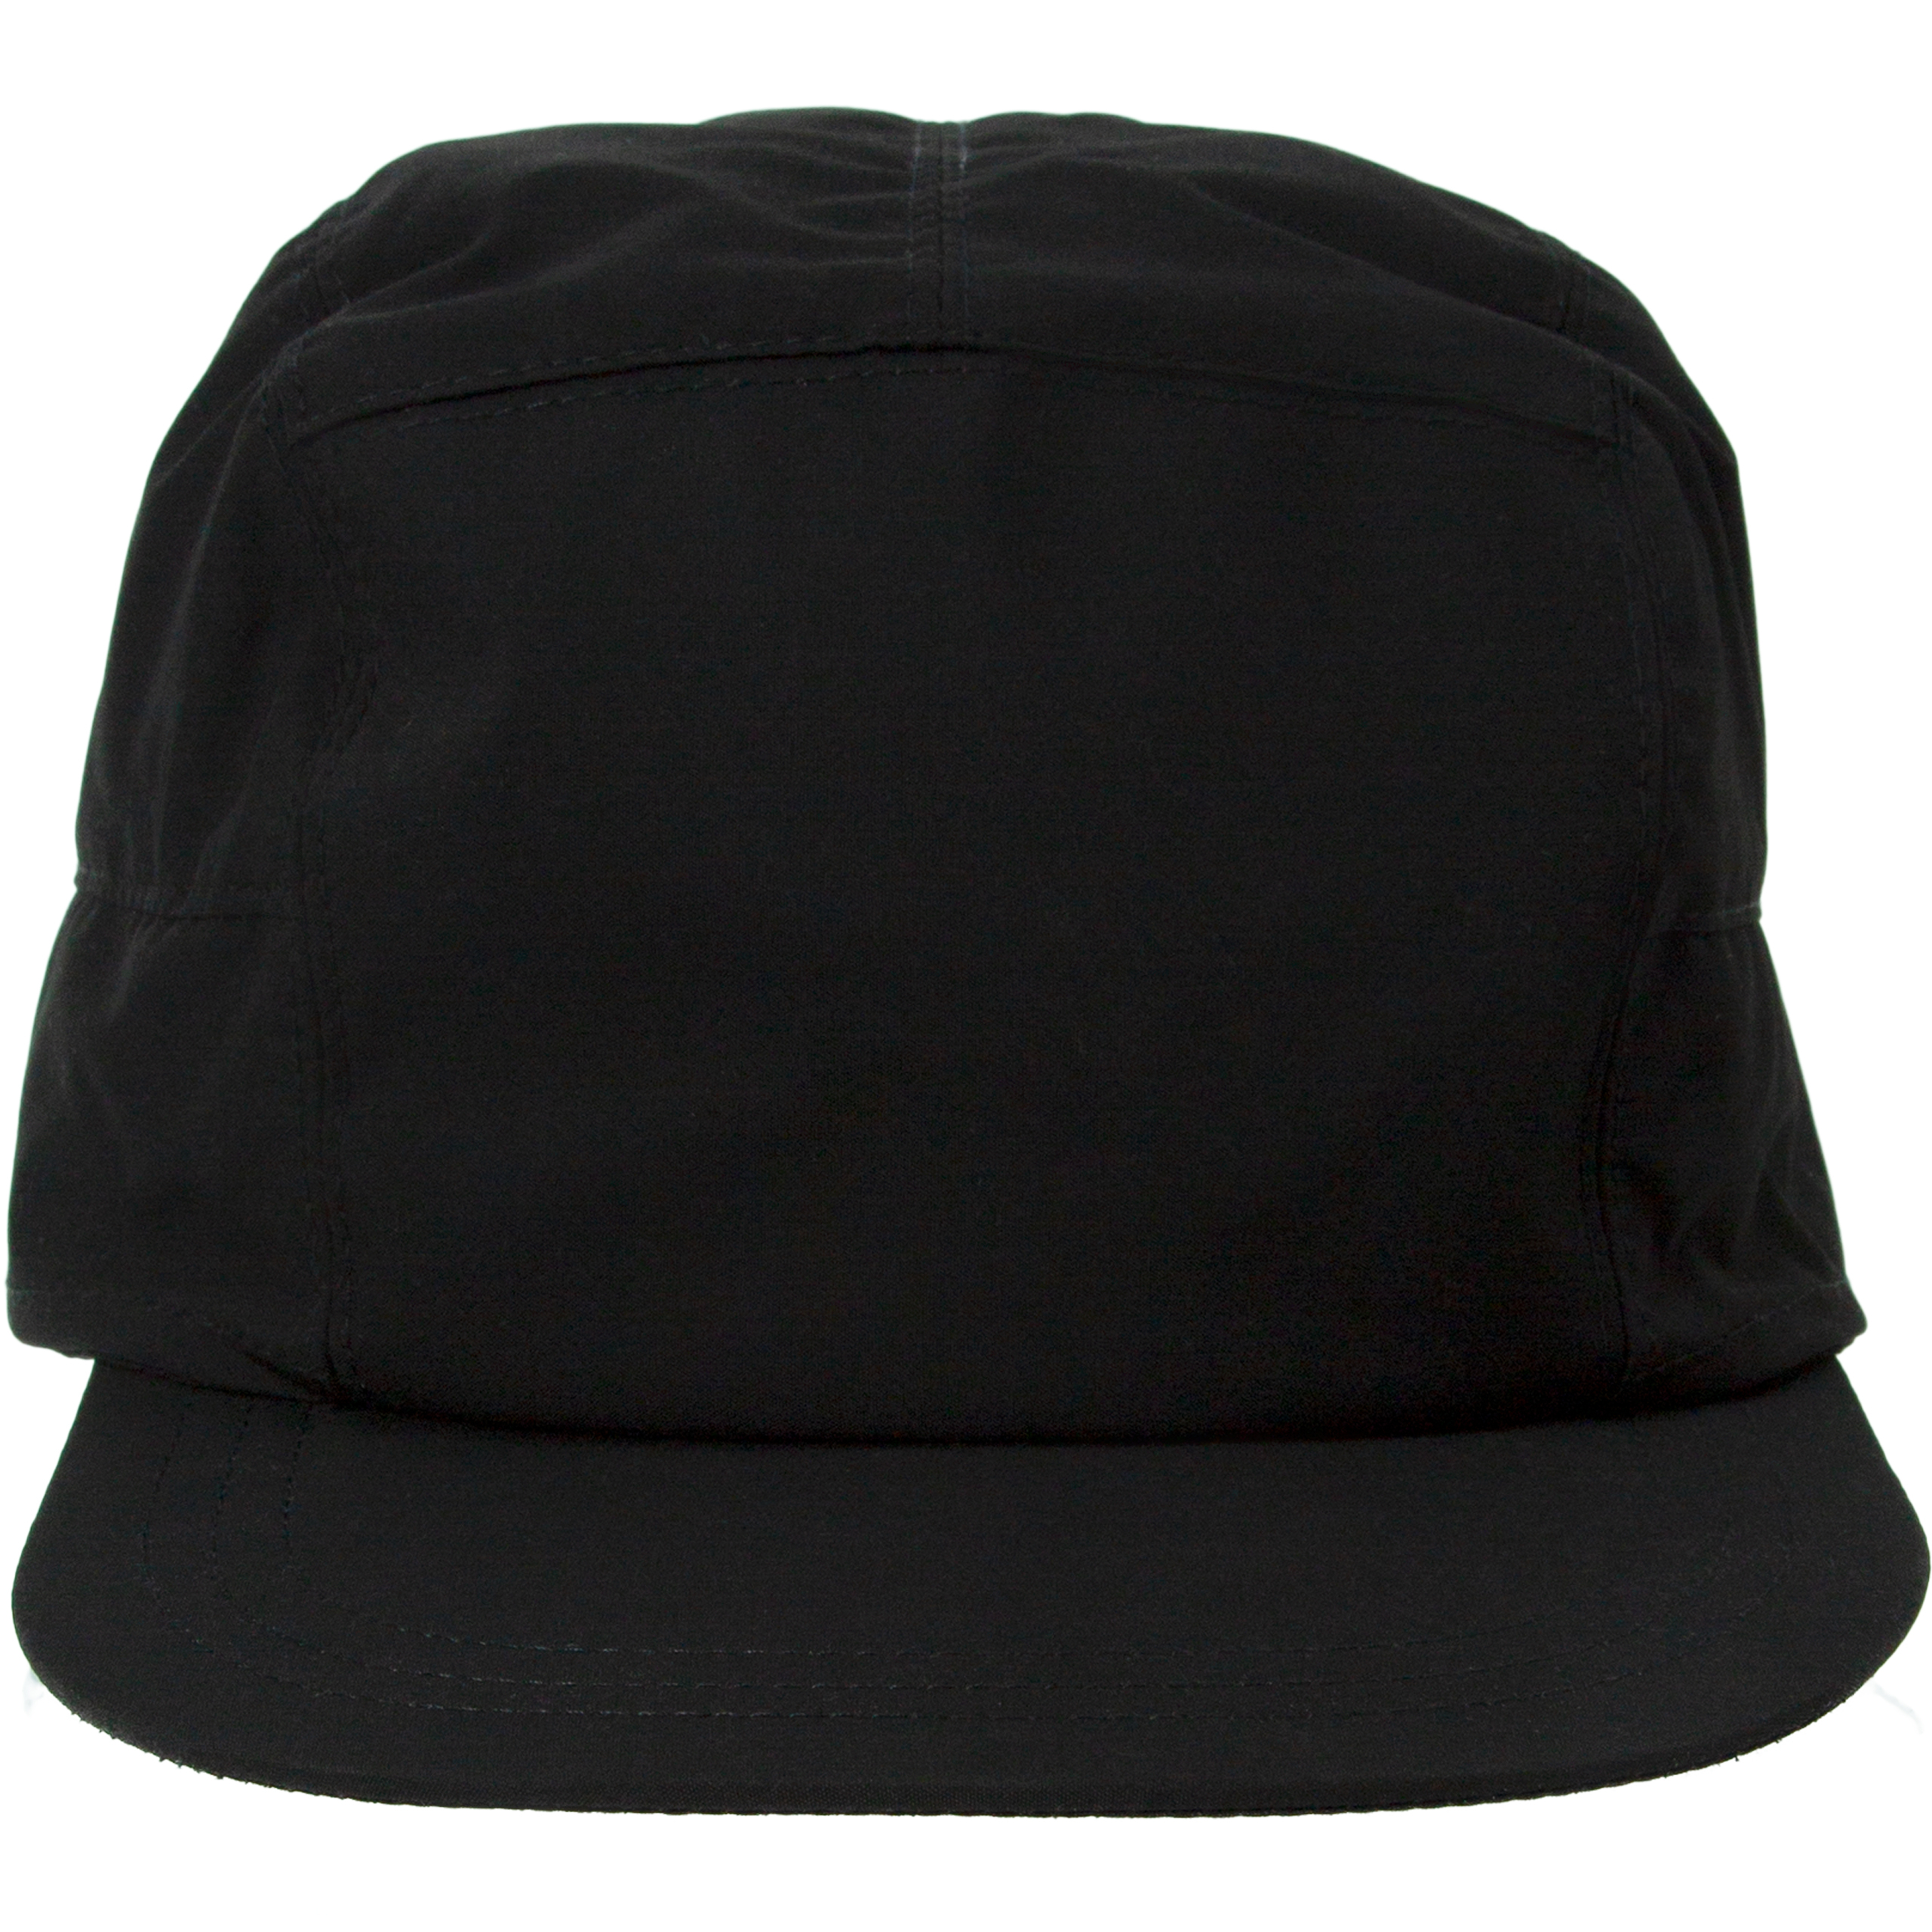 Черная кепка-трансформер OAMC 23A28OAB17/TESBA032/001, размер One Size 23A28OAB17/TESBA032/001 - фото 1